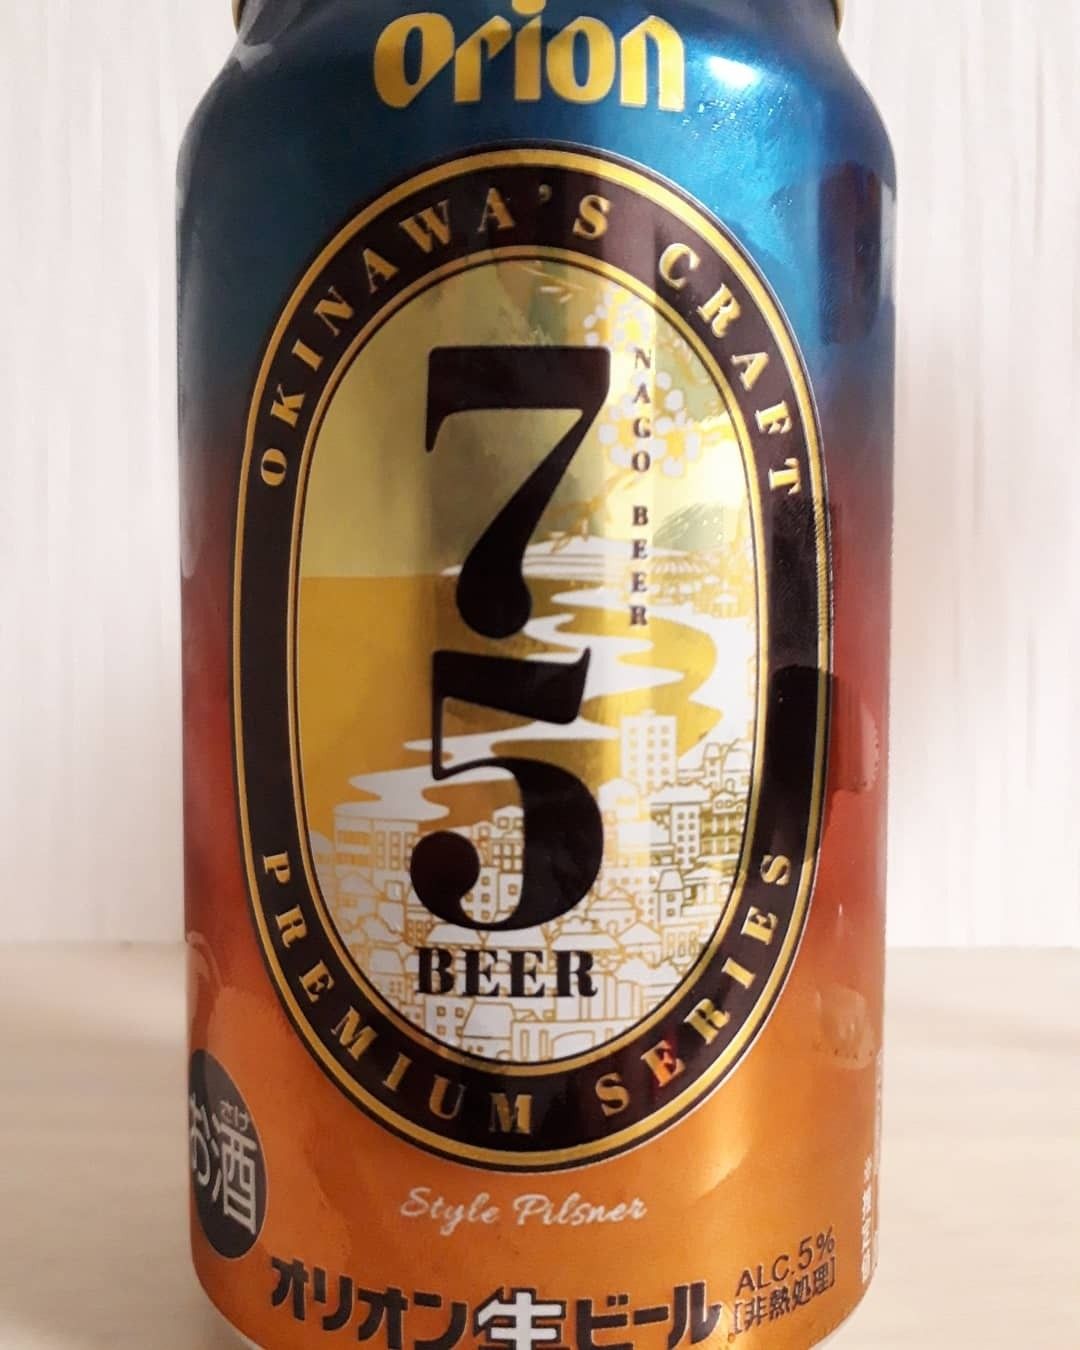 75ビール オリオンビール Beer Beer Beer 楽天ブログ